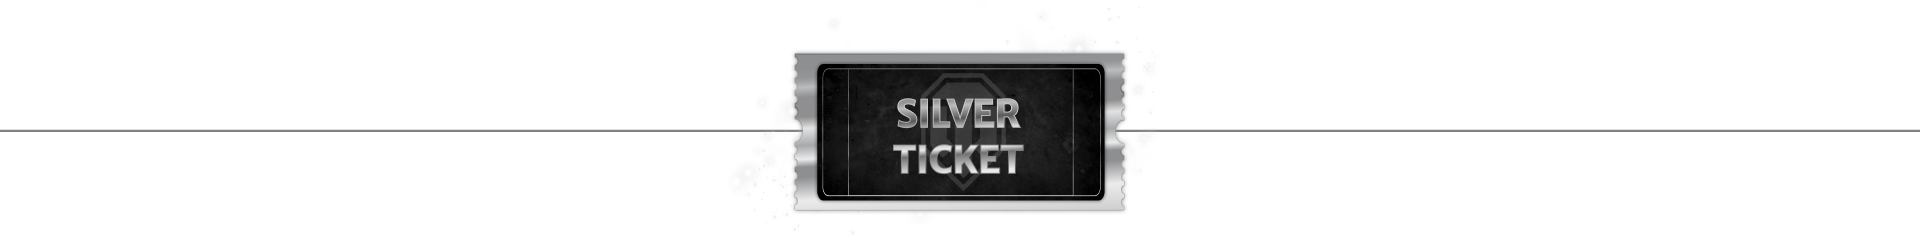 HiddenTicket - Silver